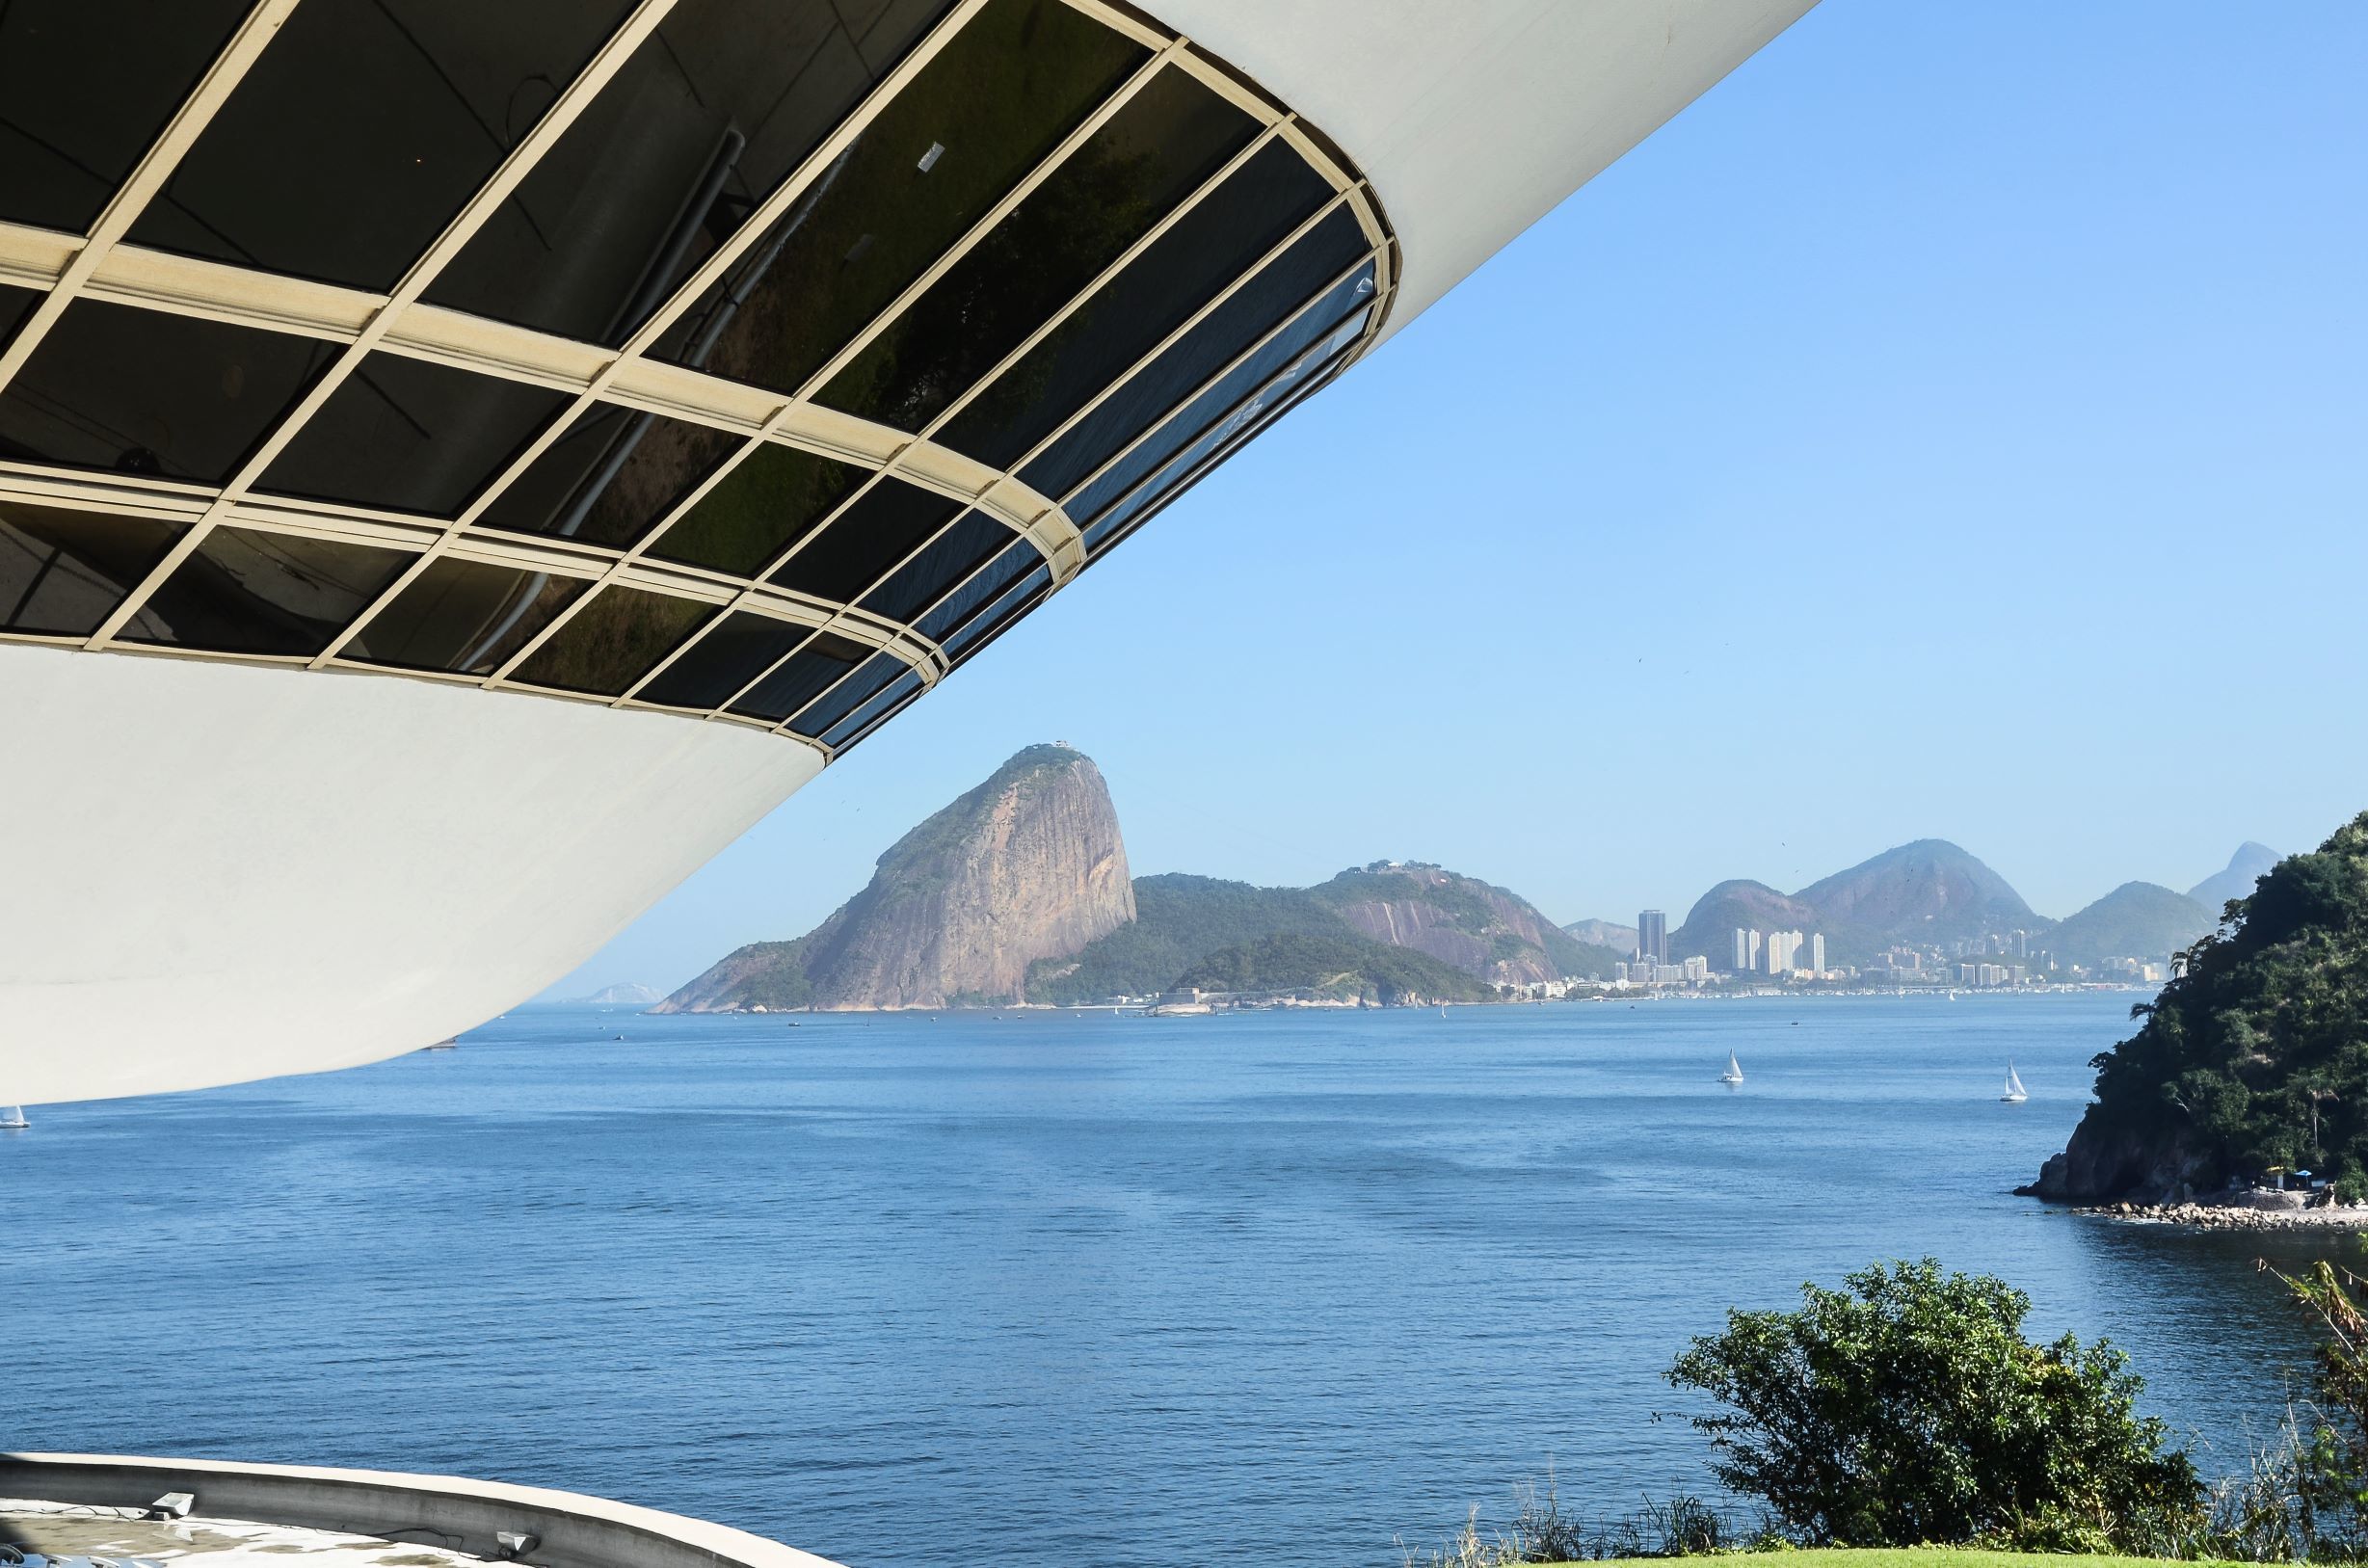 Architecture contemporaine du Brésil